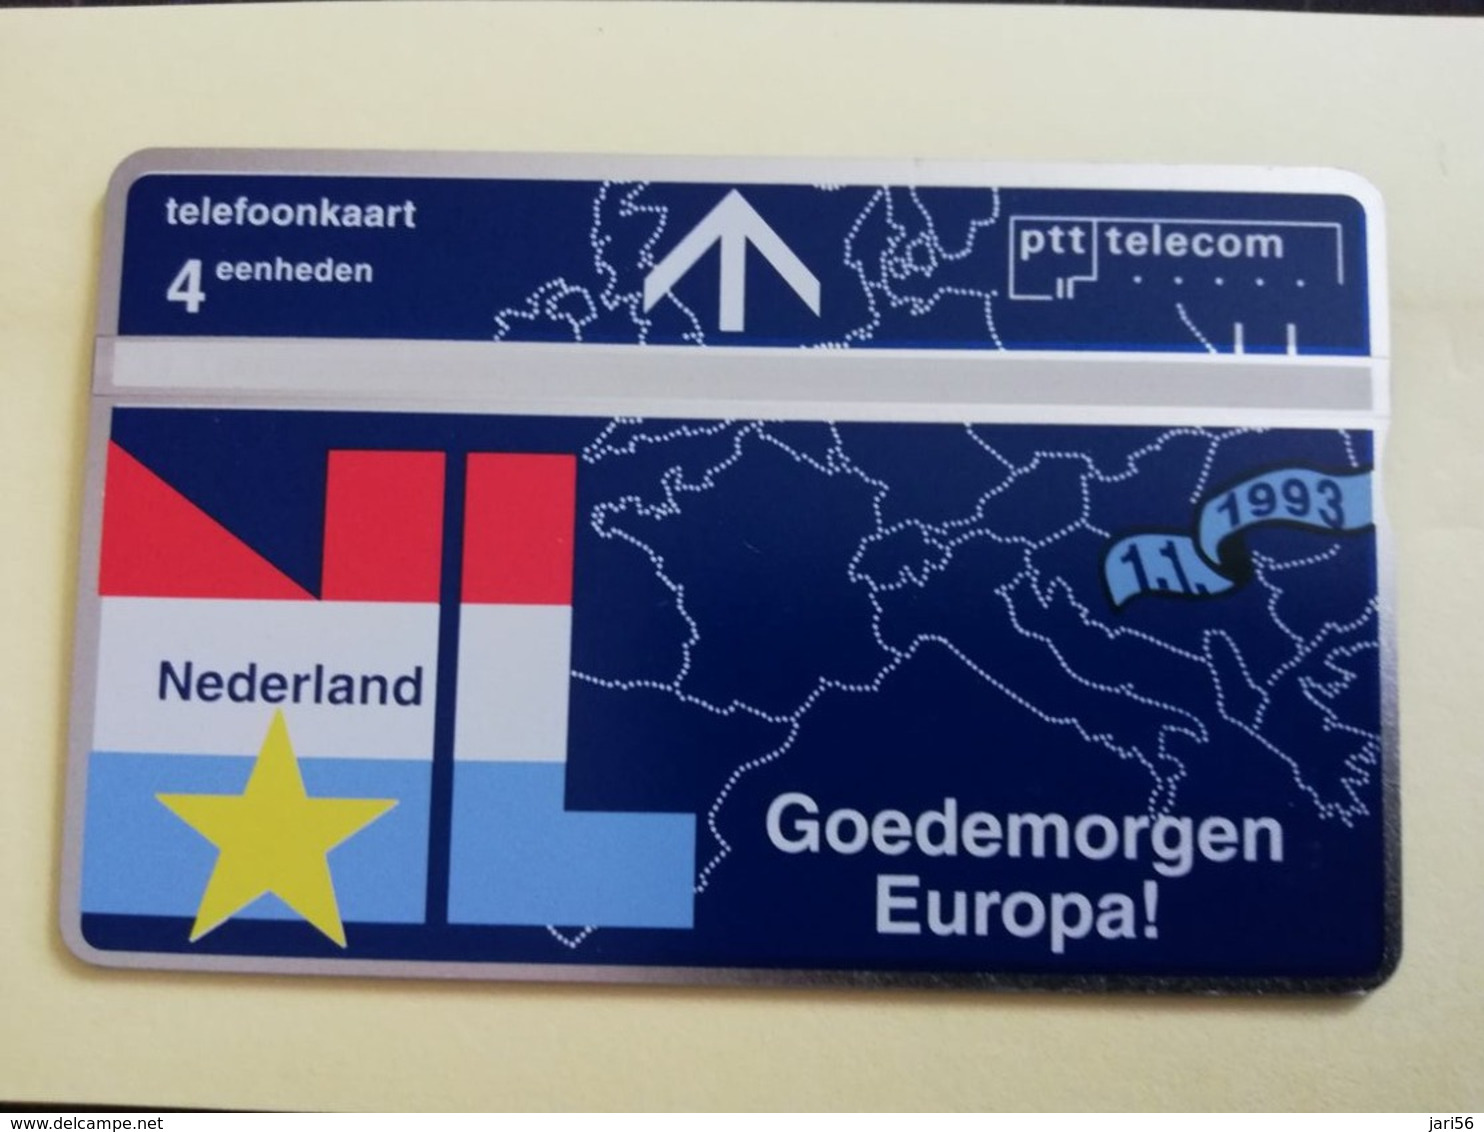 NETHERLANDS  4UNITS GODEMORGEN NEDERLAND   LANDYS & GYR   Mint  ** 3146** - Privé